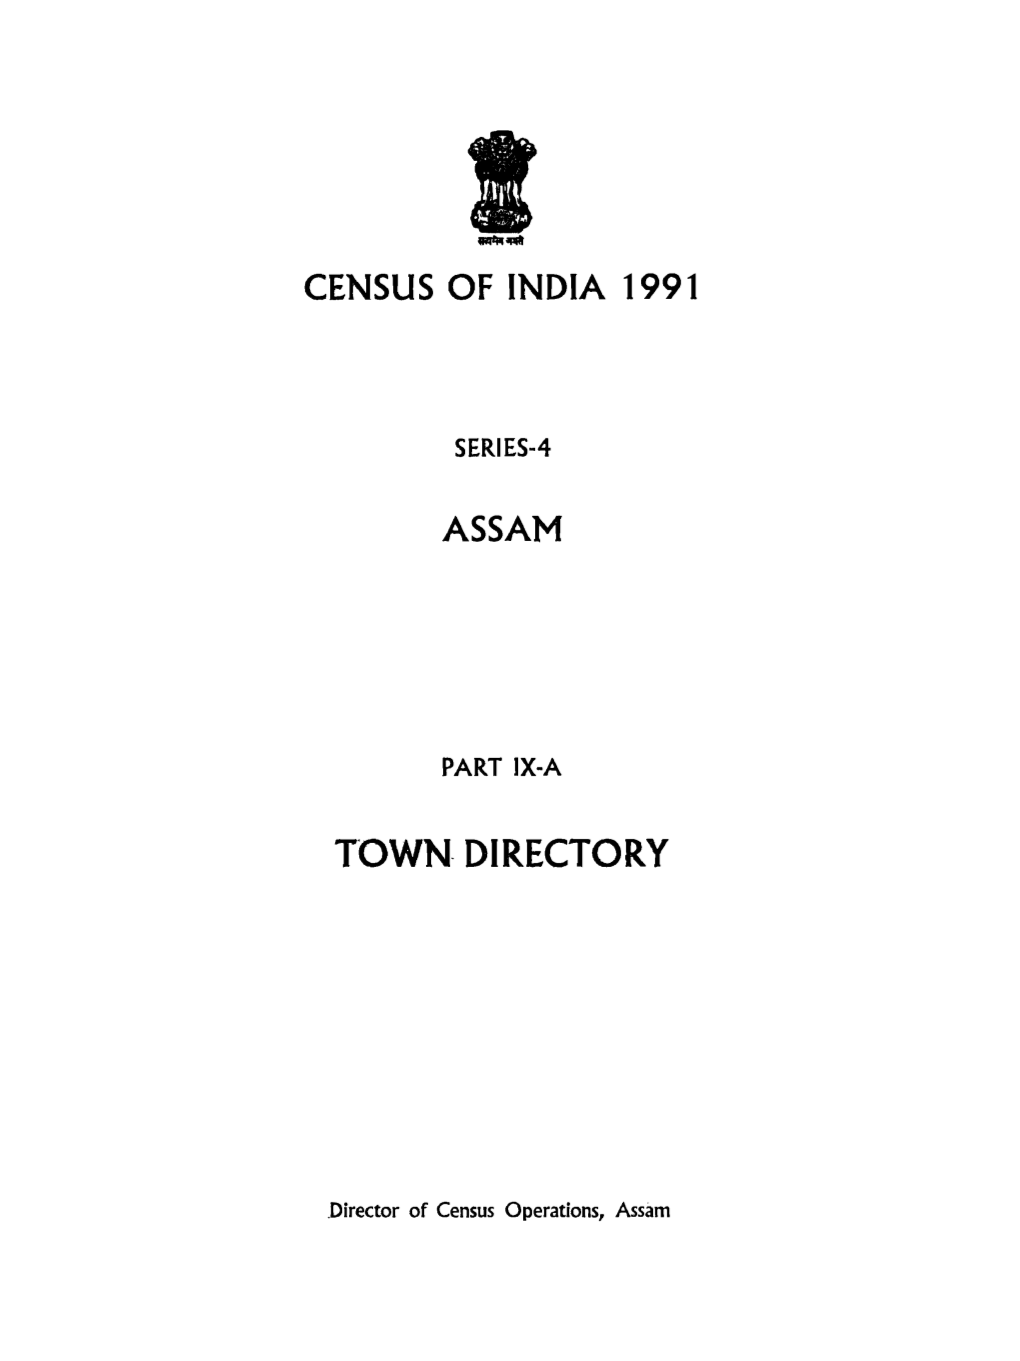 Town Directory, Part IX-A, Series-4, Assam